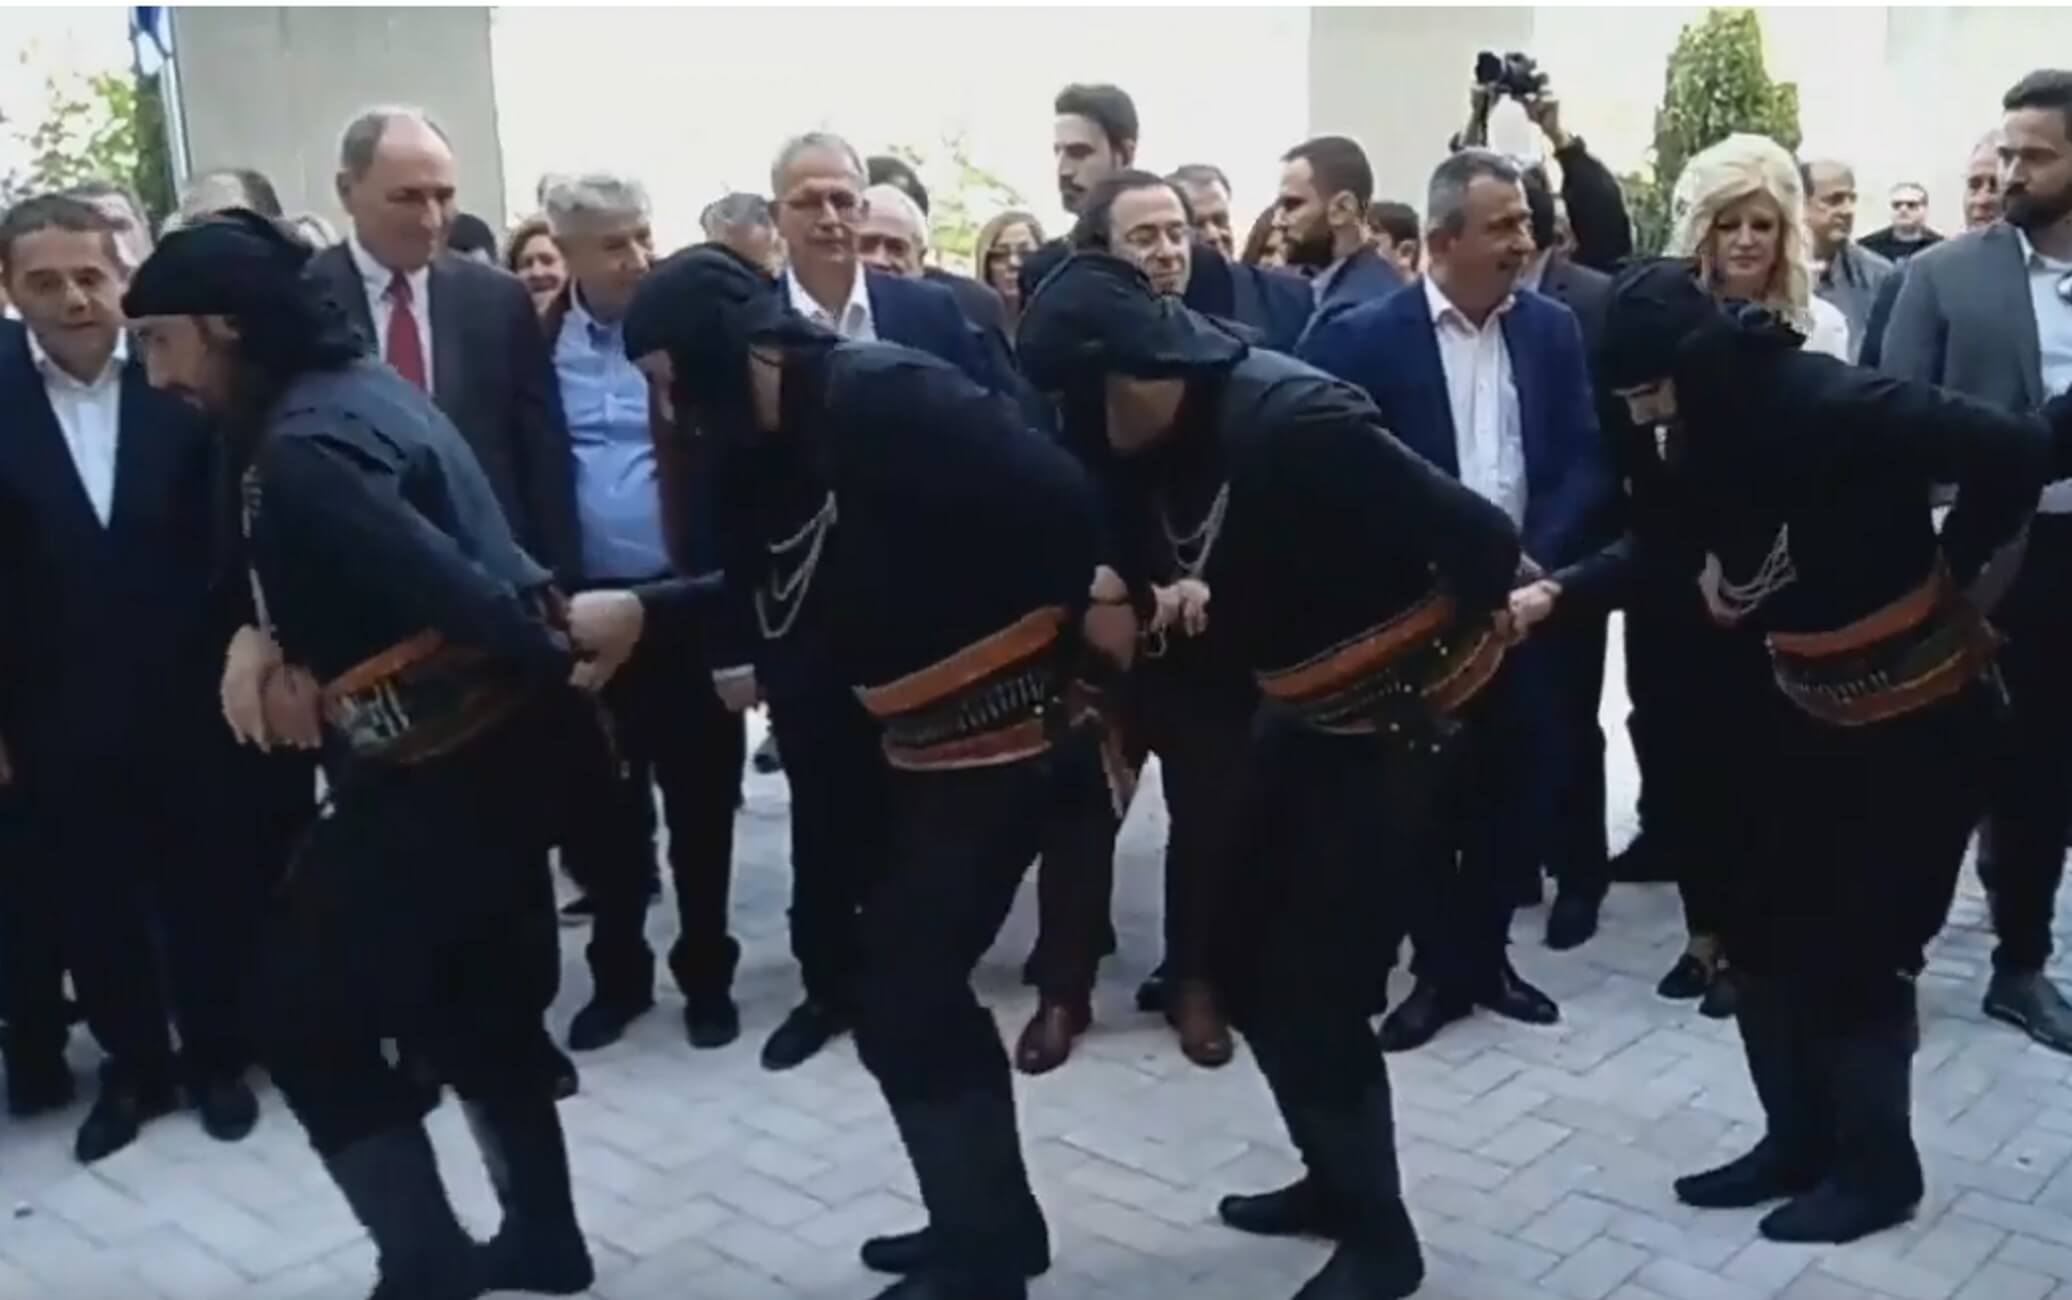 Κοζάνη: Εκπληκτικός ποντιακός χορός μπροστά στον Αλέξη Τσίπρα – Η αντίδραση του πρωθυπουργού – video